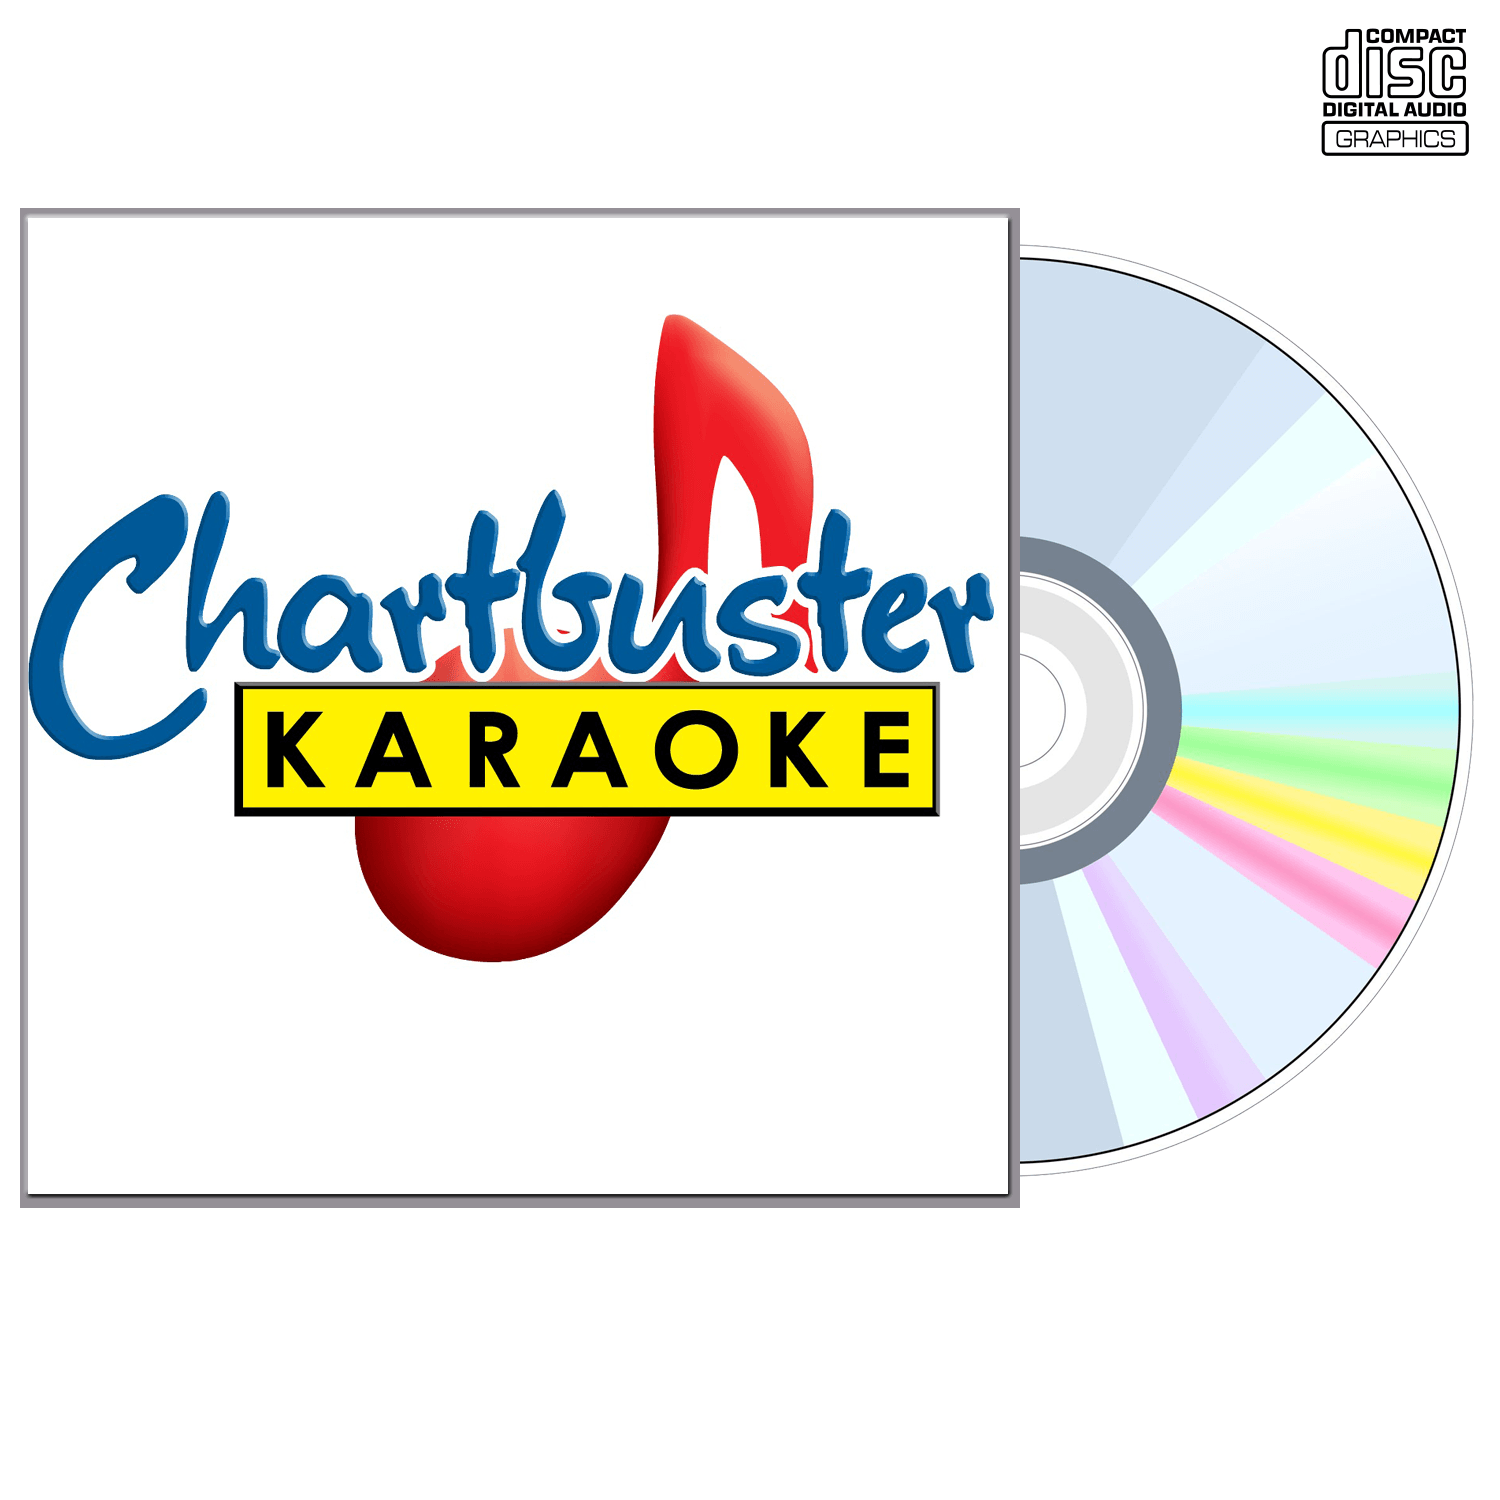 Gordon Jensen - CD+G - Chartbuster Karaoke - Karaoke Home Entertainment